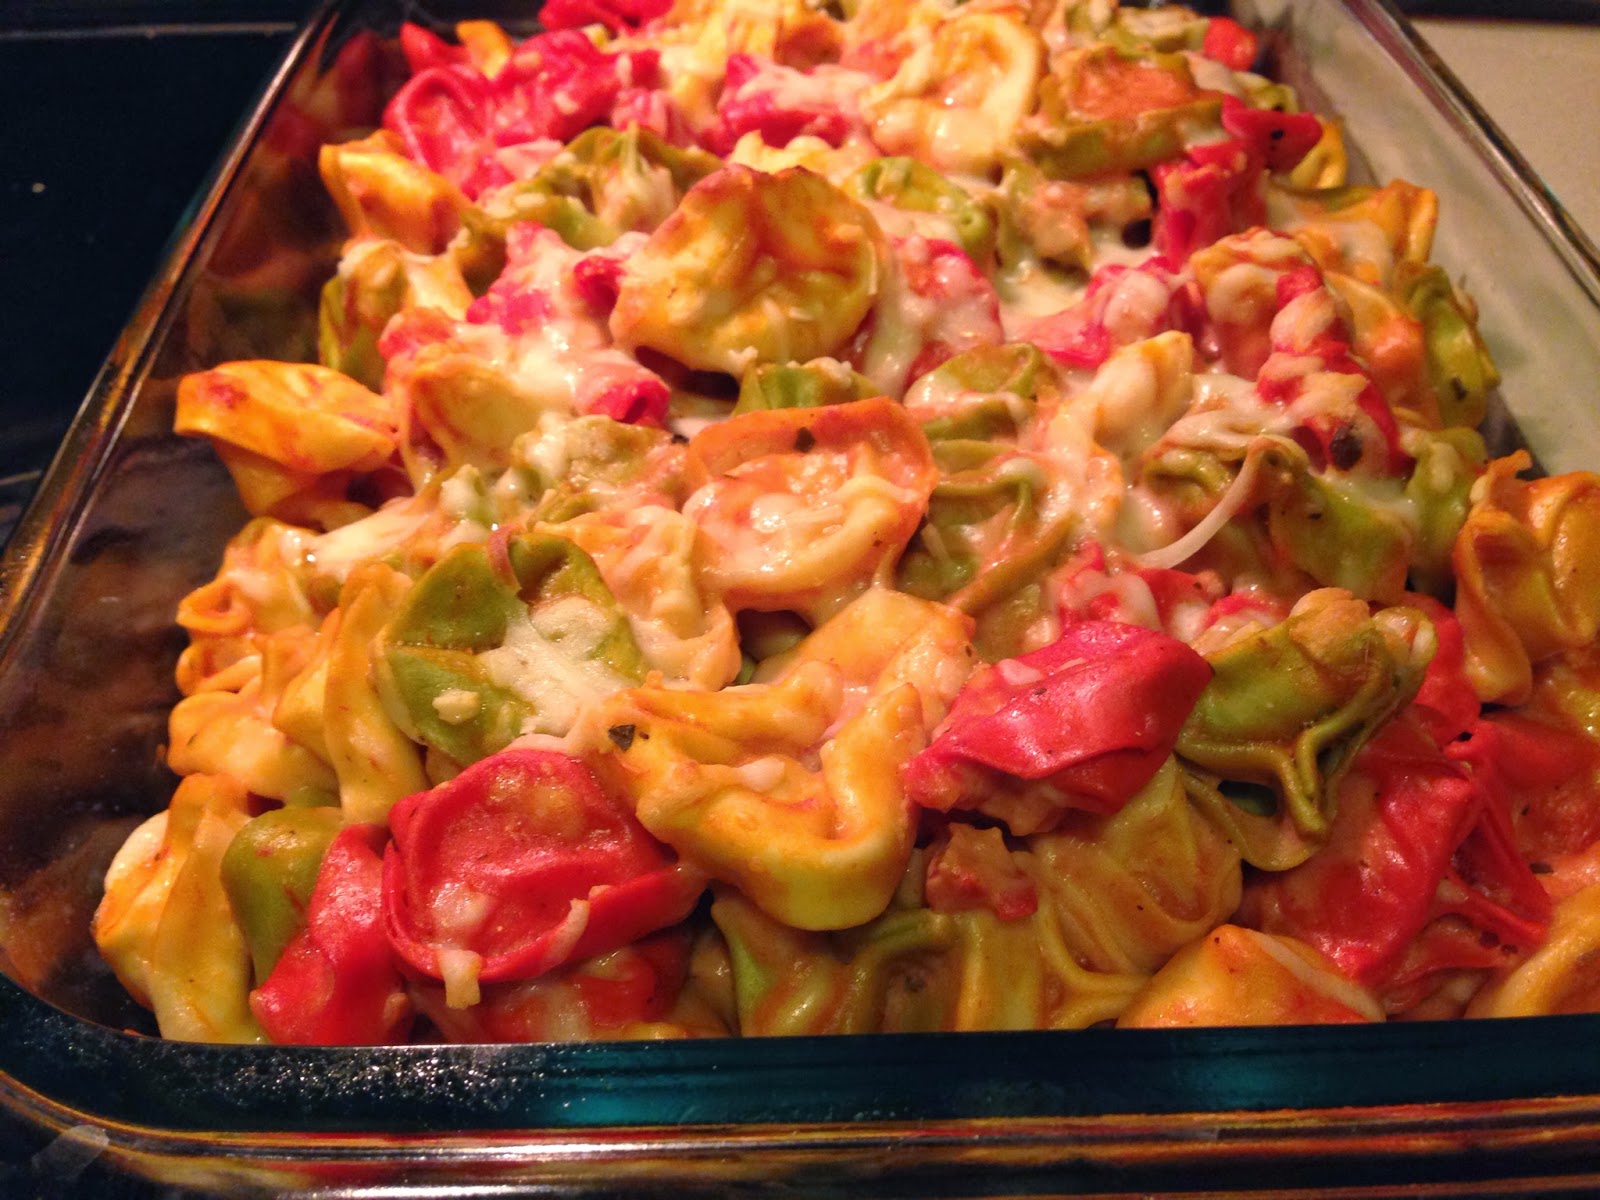 Ate it, now rate it! : Tortellini Casserole